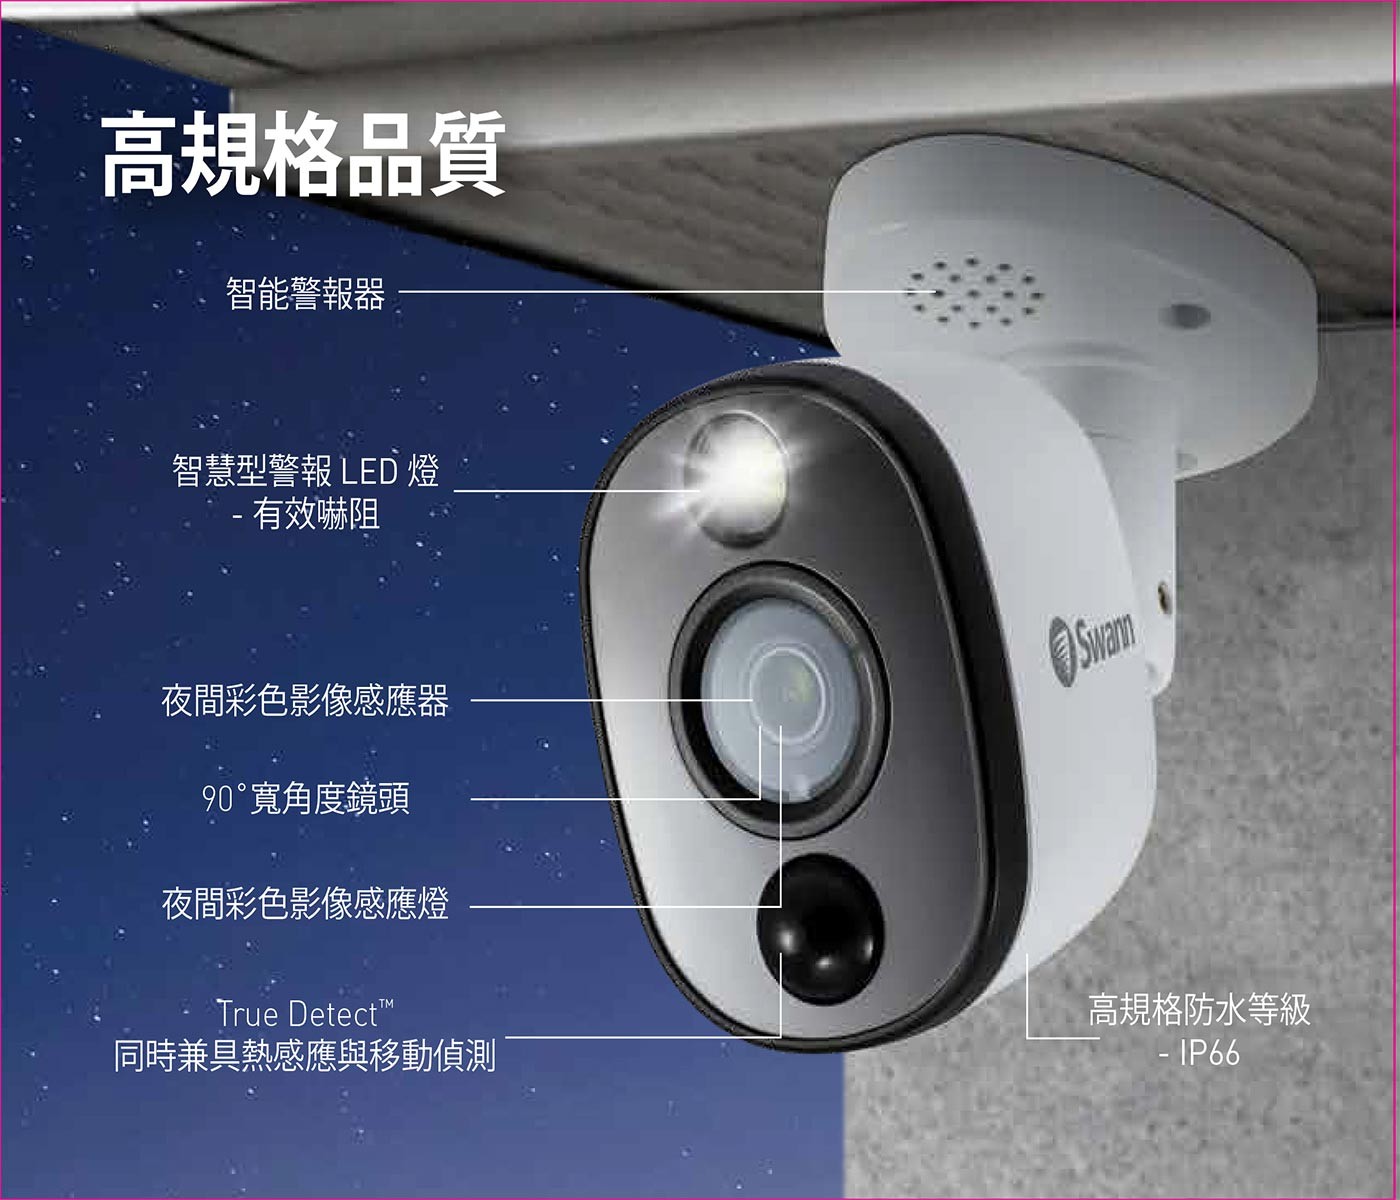 Swann 8支八百萬畫素攝影機 + 4TB 八路 DVR 監控主機組4K 800 萬畫素高清解析度，夜間彩色最遠可達 10M，黑白視覺清晰度為 40M，4TB 大容量儲存空間，防水等級 IP66/90 度廣角，攝像機有內置警報，攝像機內置 LED SPOT LIGHT，一年保固 / 支援 DROPBOX。